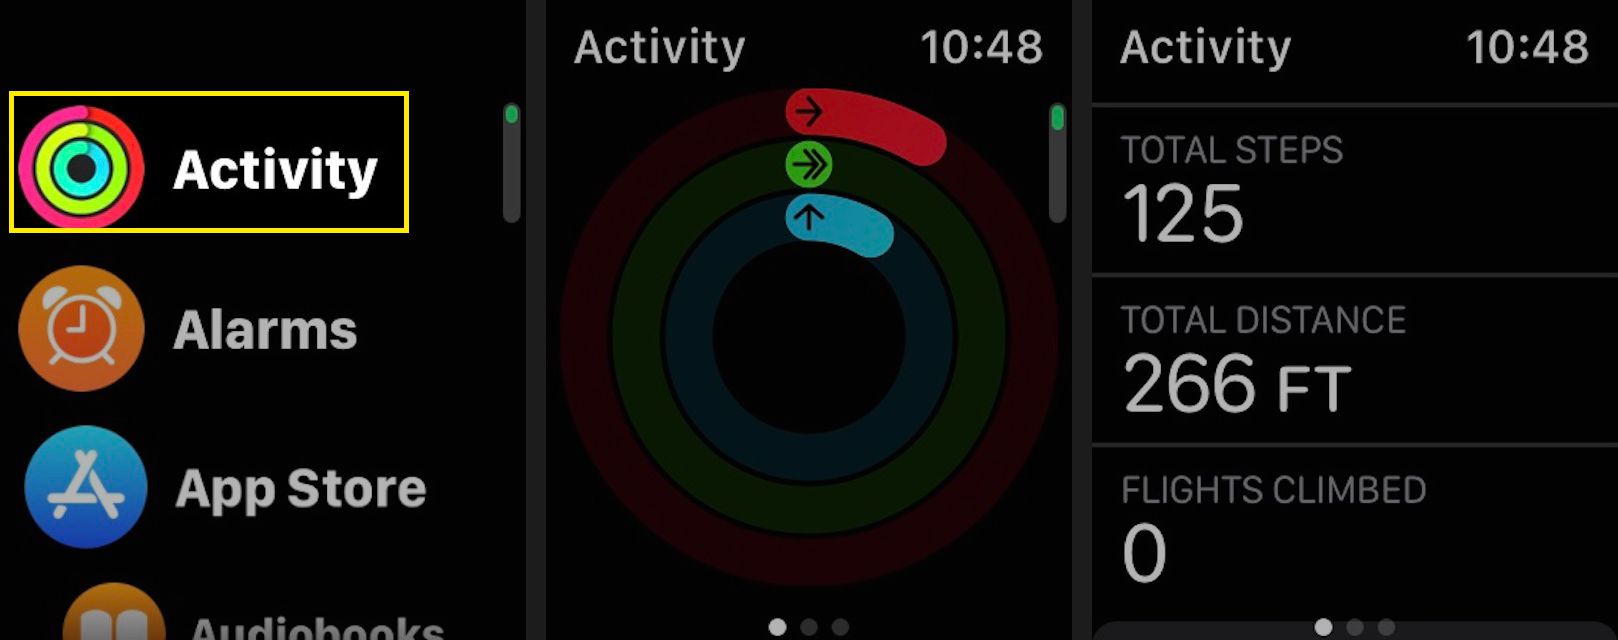 För att kontrollera ditt nuvarande steg och trappklättringsantal, starta Aktivitets-appen på din Apple Watch och bläddra sedan ner för att se dina aktuella totala steg, totala avstånd och klättrade flyg.